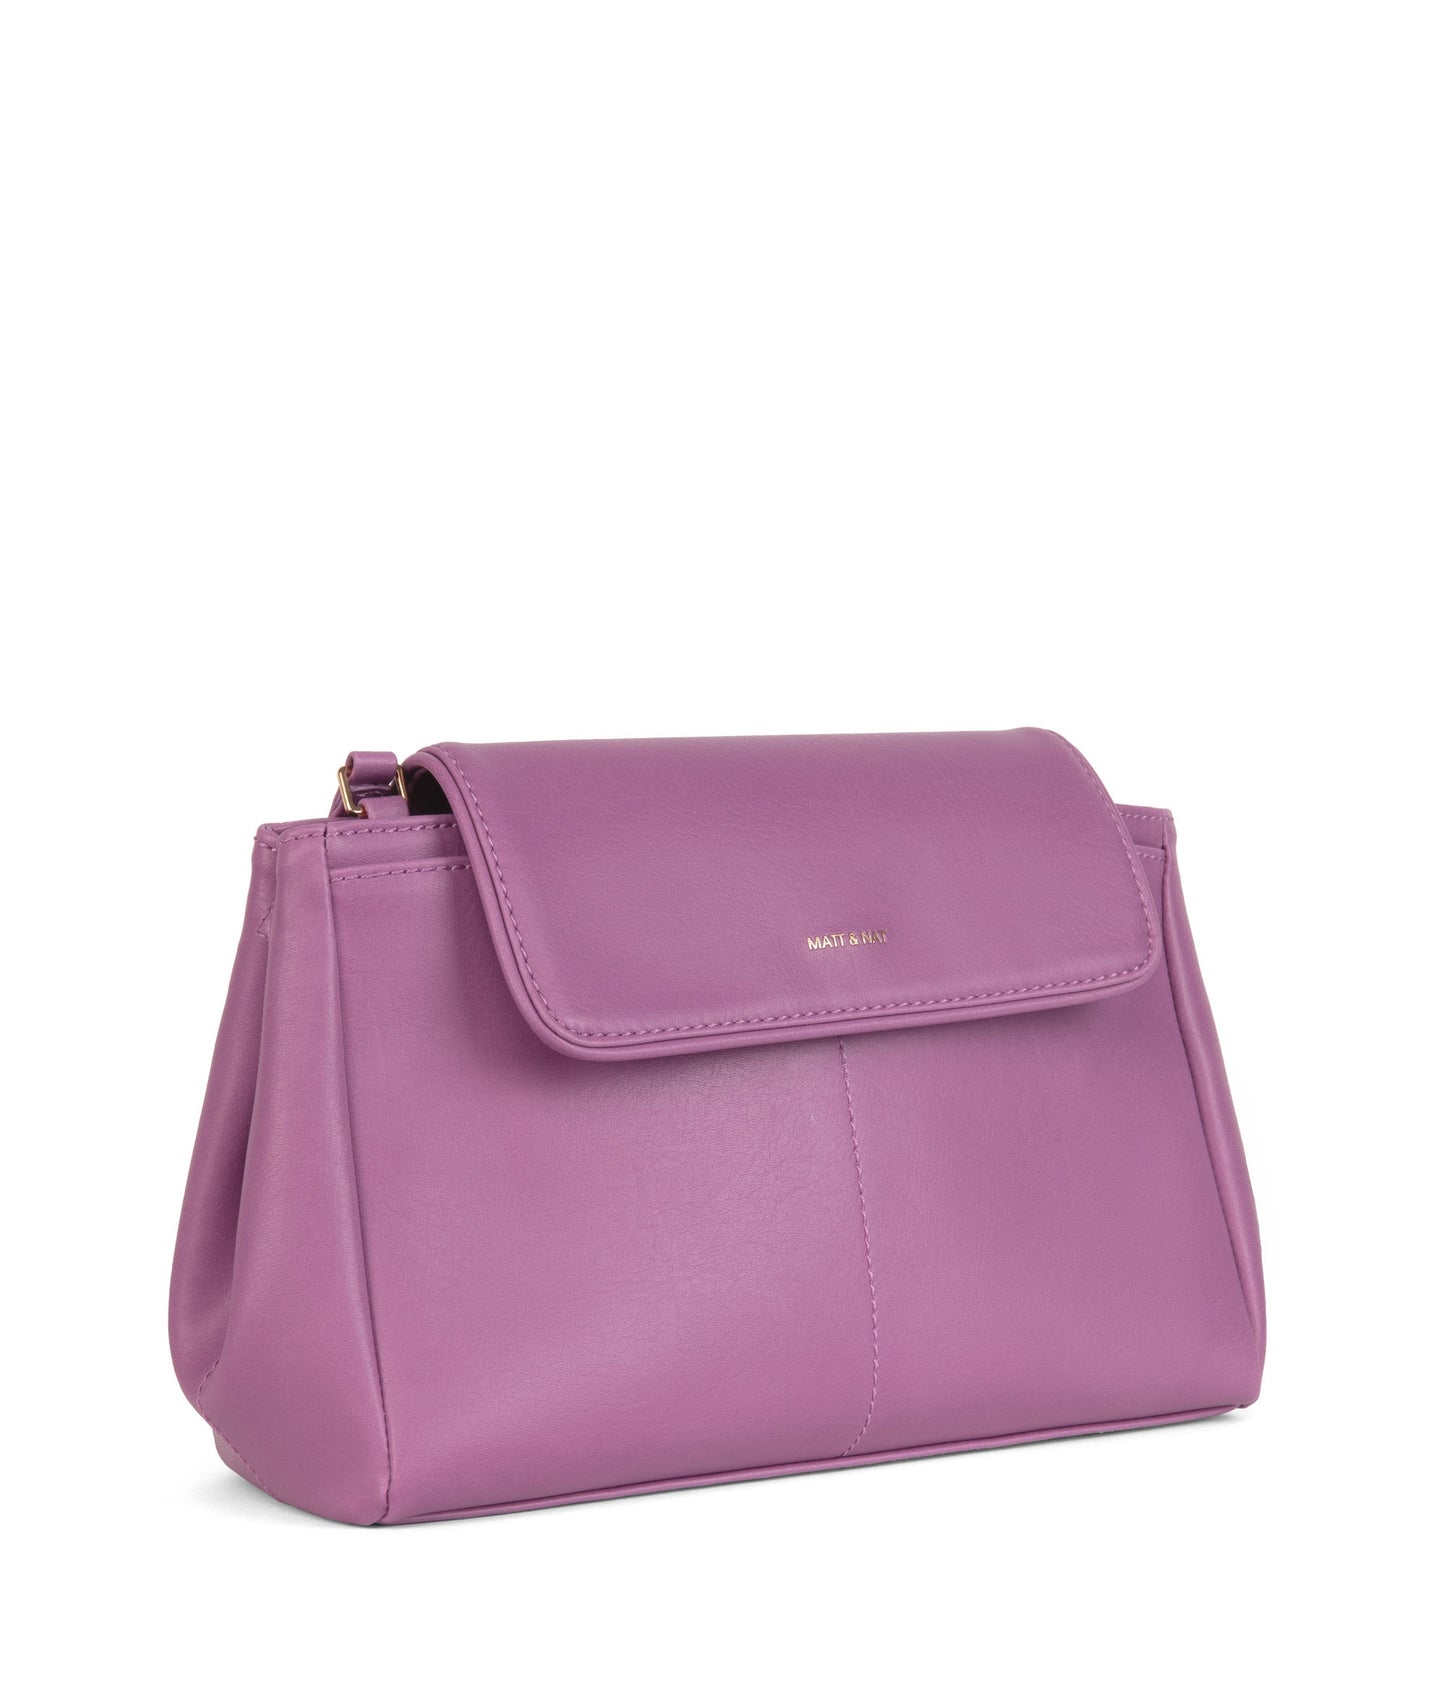 SAMOA Vegan Crossbody Bag - Vintage | Color: Pink - variant::wisteria